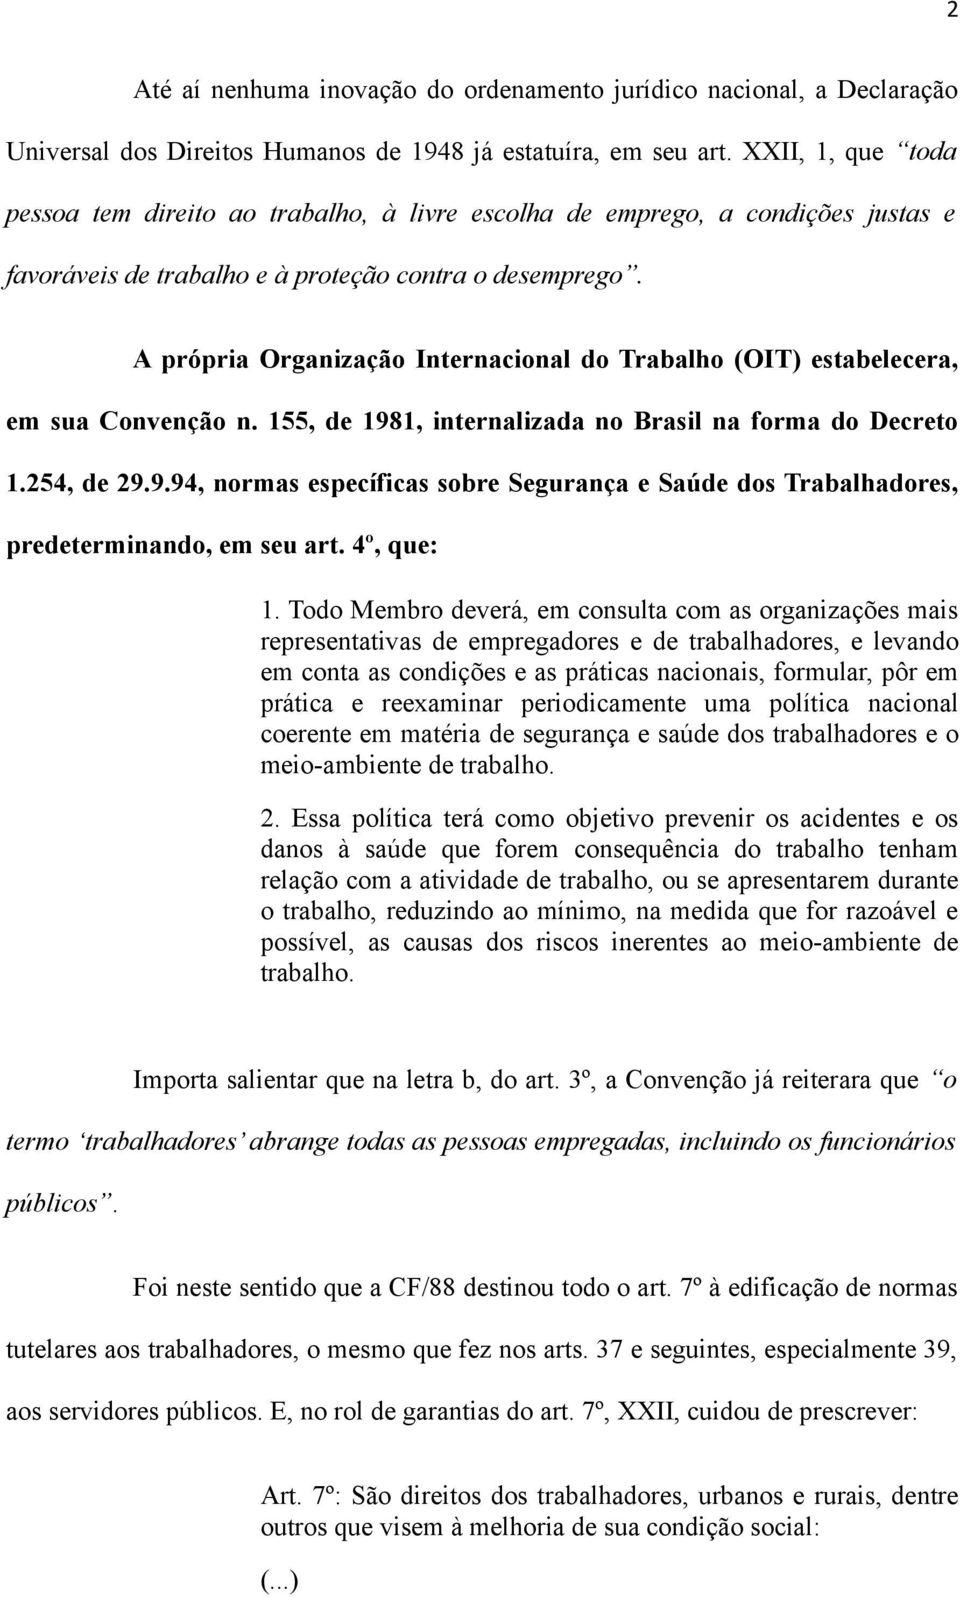 A própria Organização Internacional do Trabalho (OIT) estabelecera, em sua Convenção n. 155, de 1981, internalizada no Brasil na forma do Decreto 1.254, de 29.9.94, normas específicas sobre Segurança e Saúde dos Trabalhadores, predeterminando, em seu art.